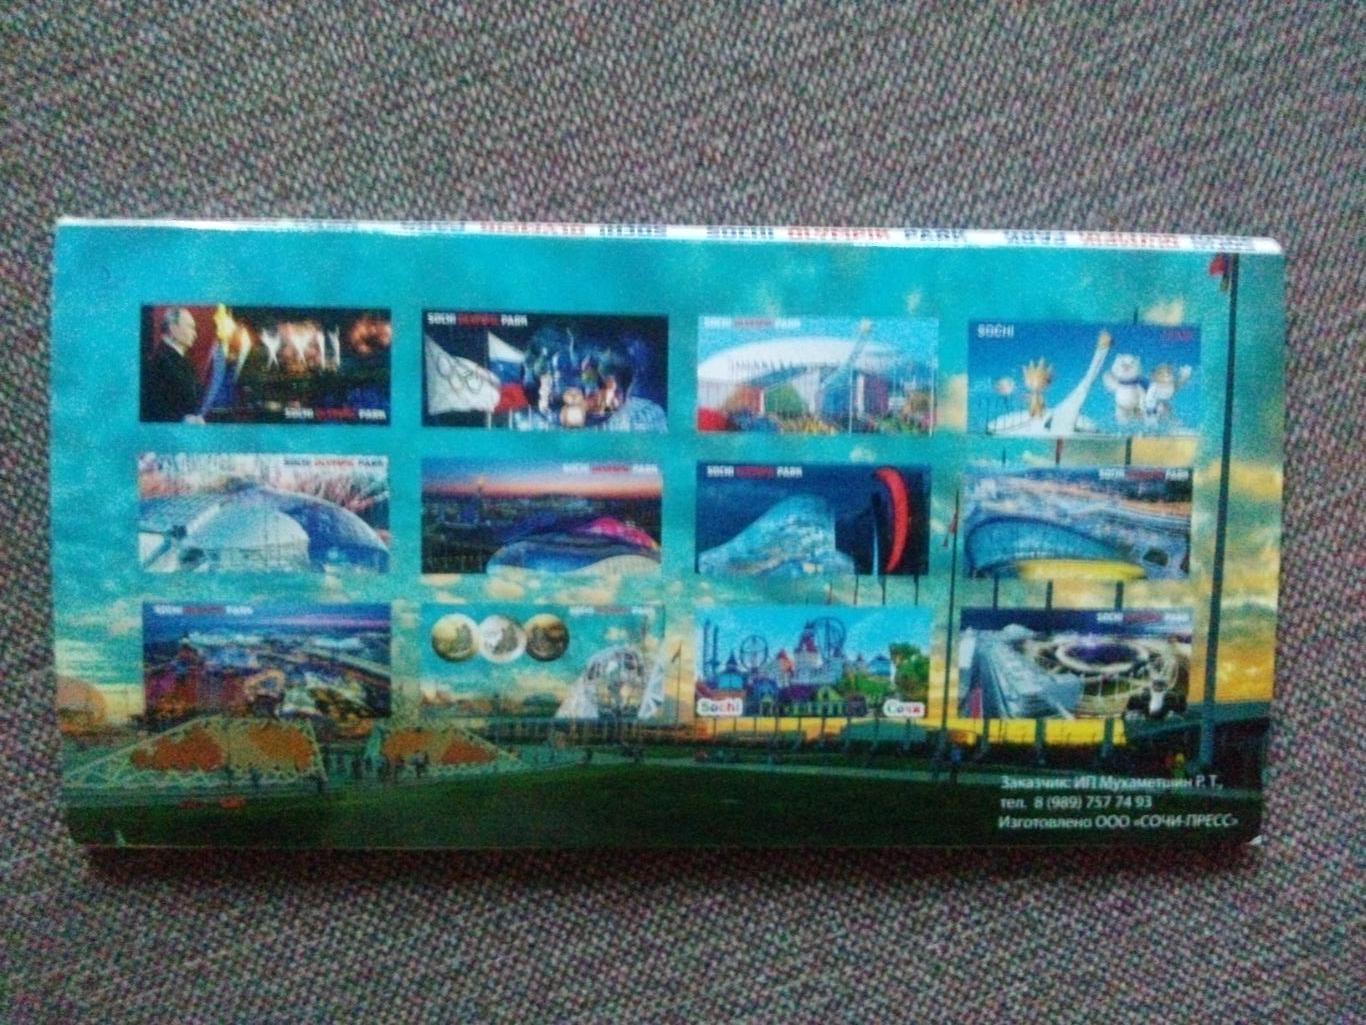 Спортсооружения Сочи Олимпиада 2014 г. полный набор - 12 открыток (Спорт) 1